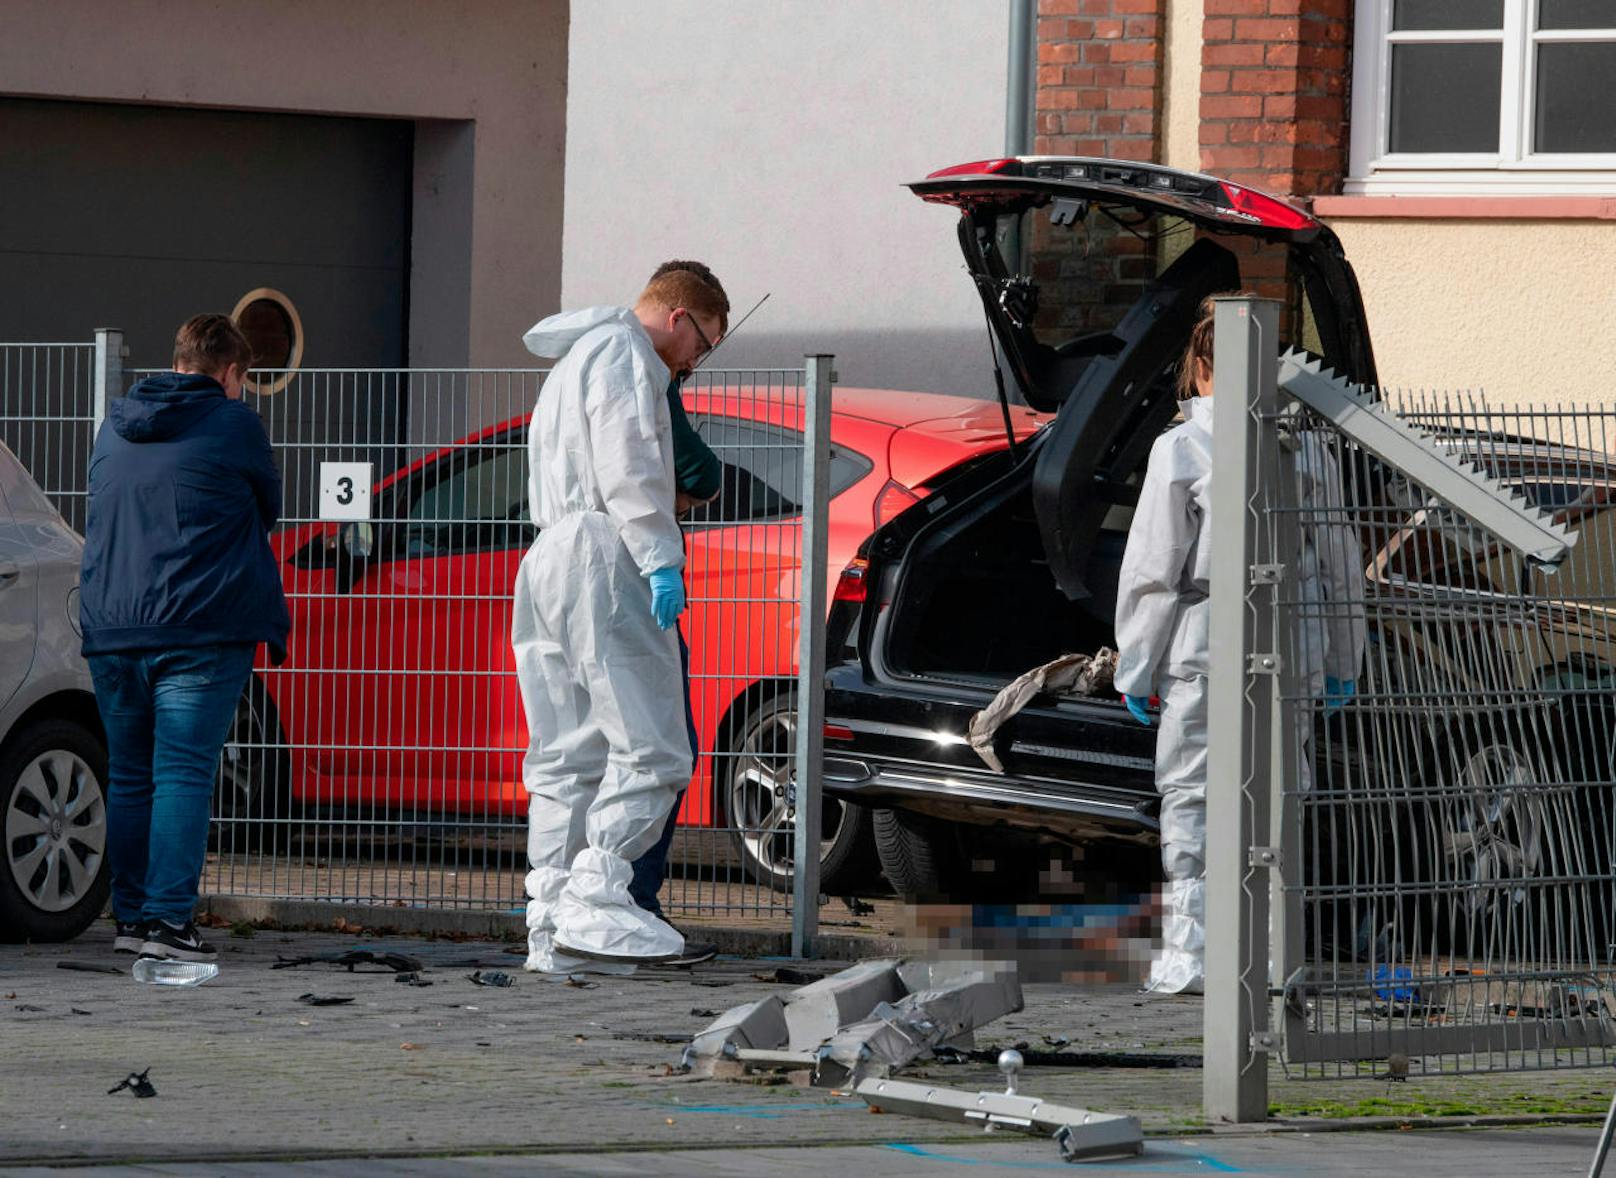 Überfahren und erschlagen: Ein 34-Jähriger soll am 25. Oktober in Limburg (Hessen) seine von ihm getrennt lebende Ehefrau <a href="https://www.heute.at/s/mann-uberfahrt-ehefrau-schlagt-ihr-beinahe-kopf-ab-51041939" target="_blank">auf bestialische Weise ermordet haben.</a>